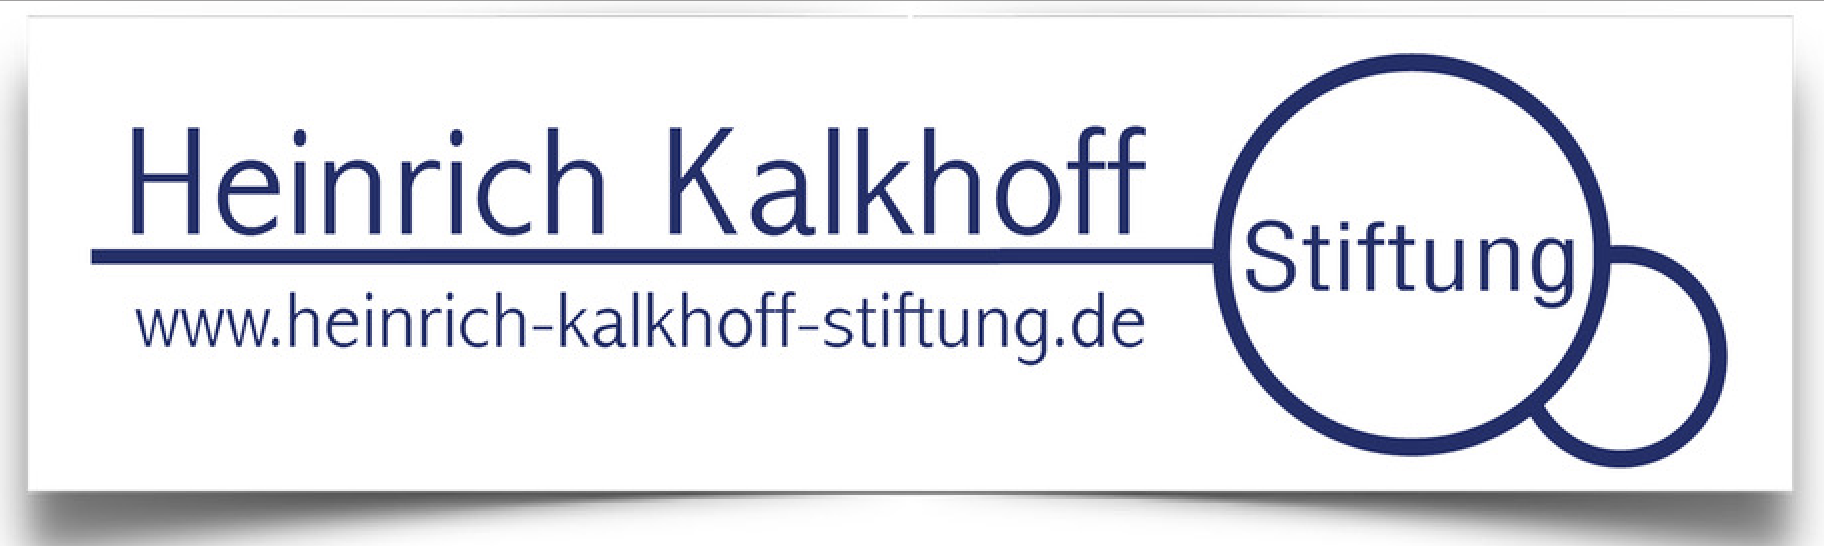 Heinrich-Kalkhoff-Stiftung